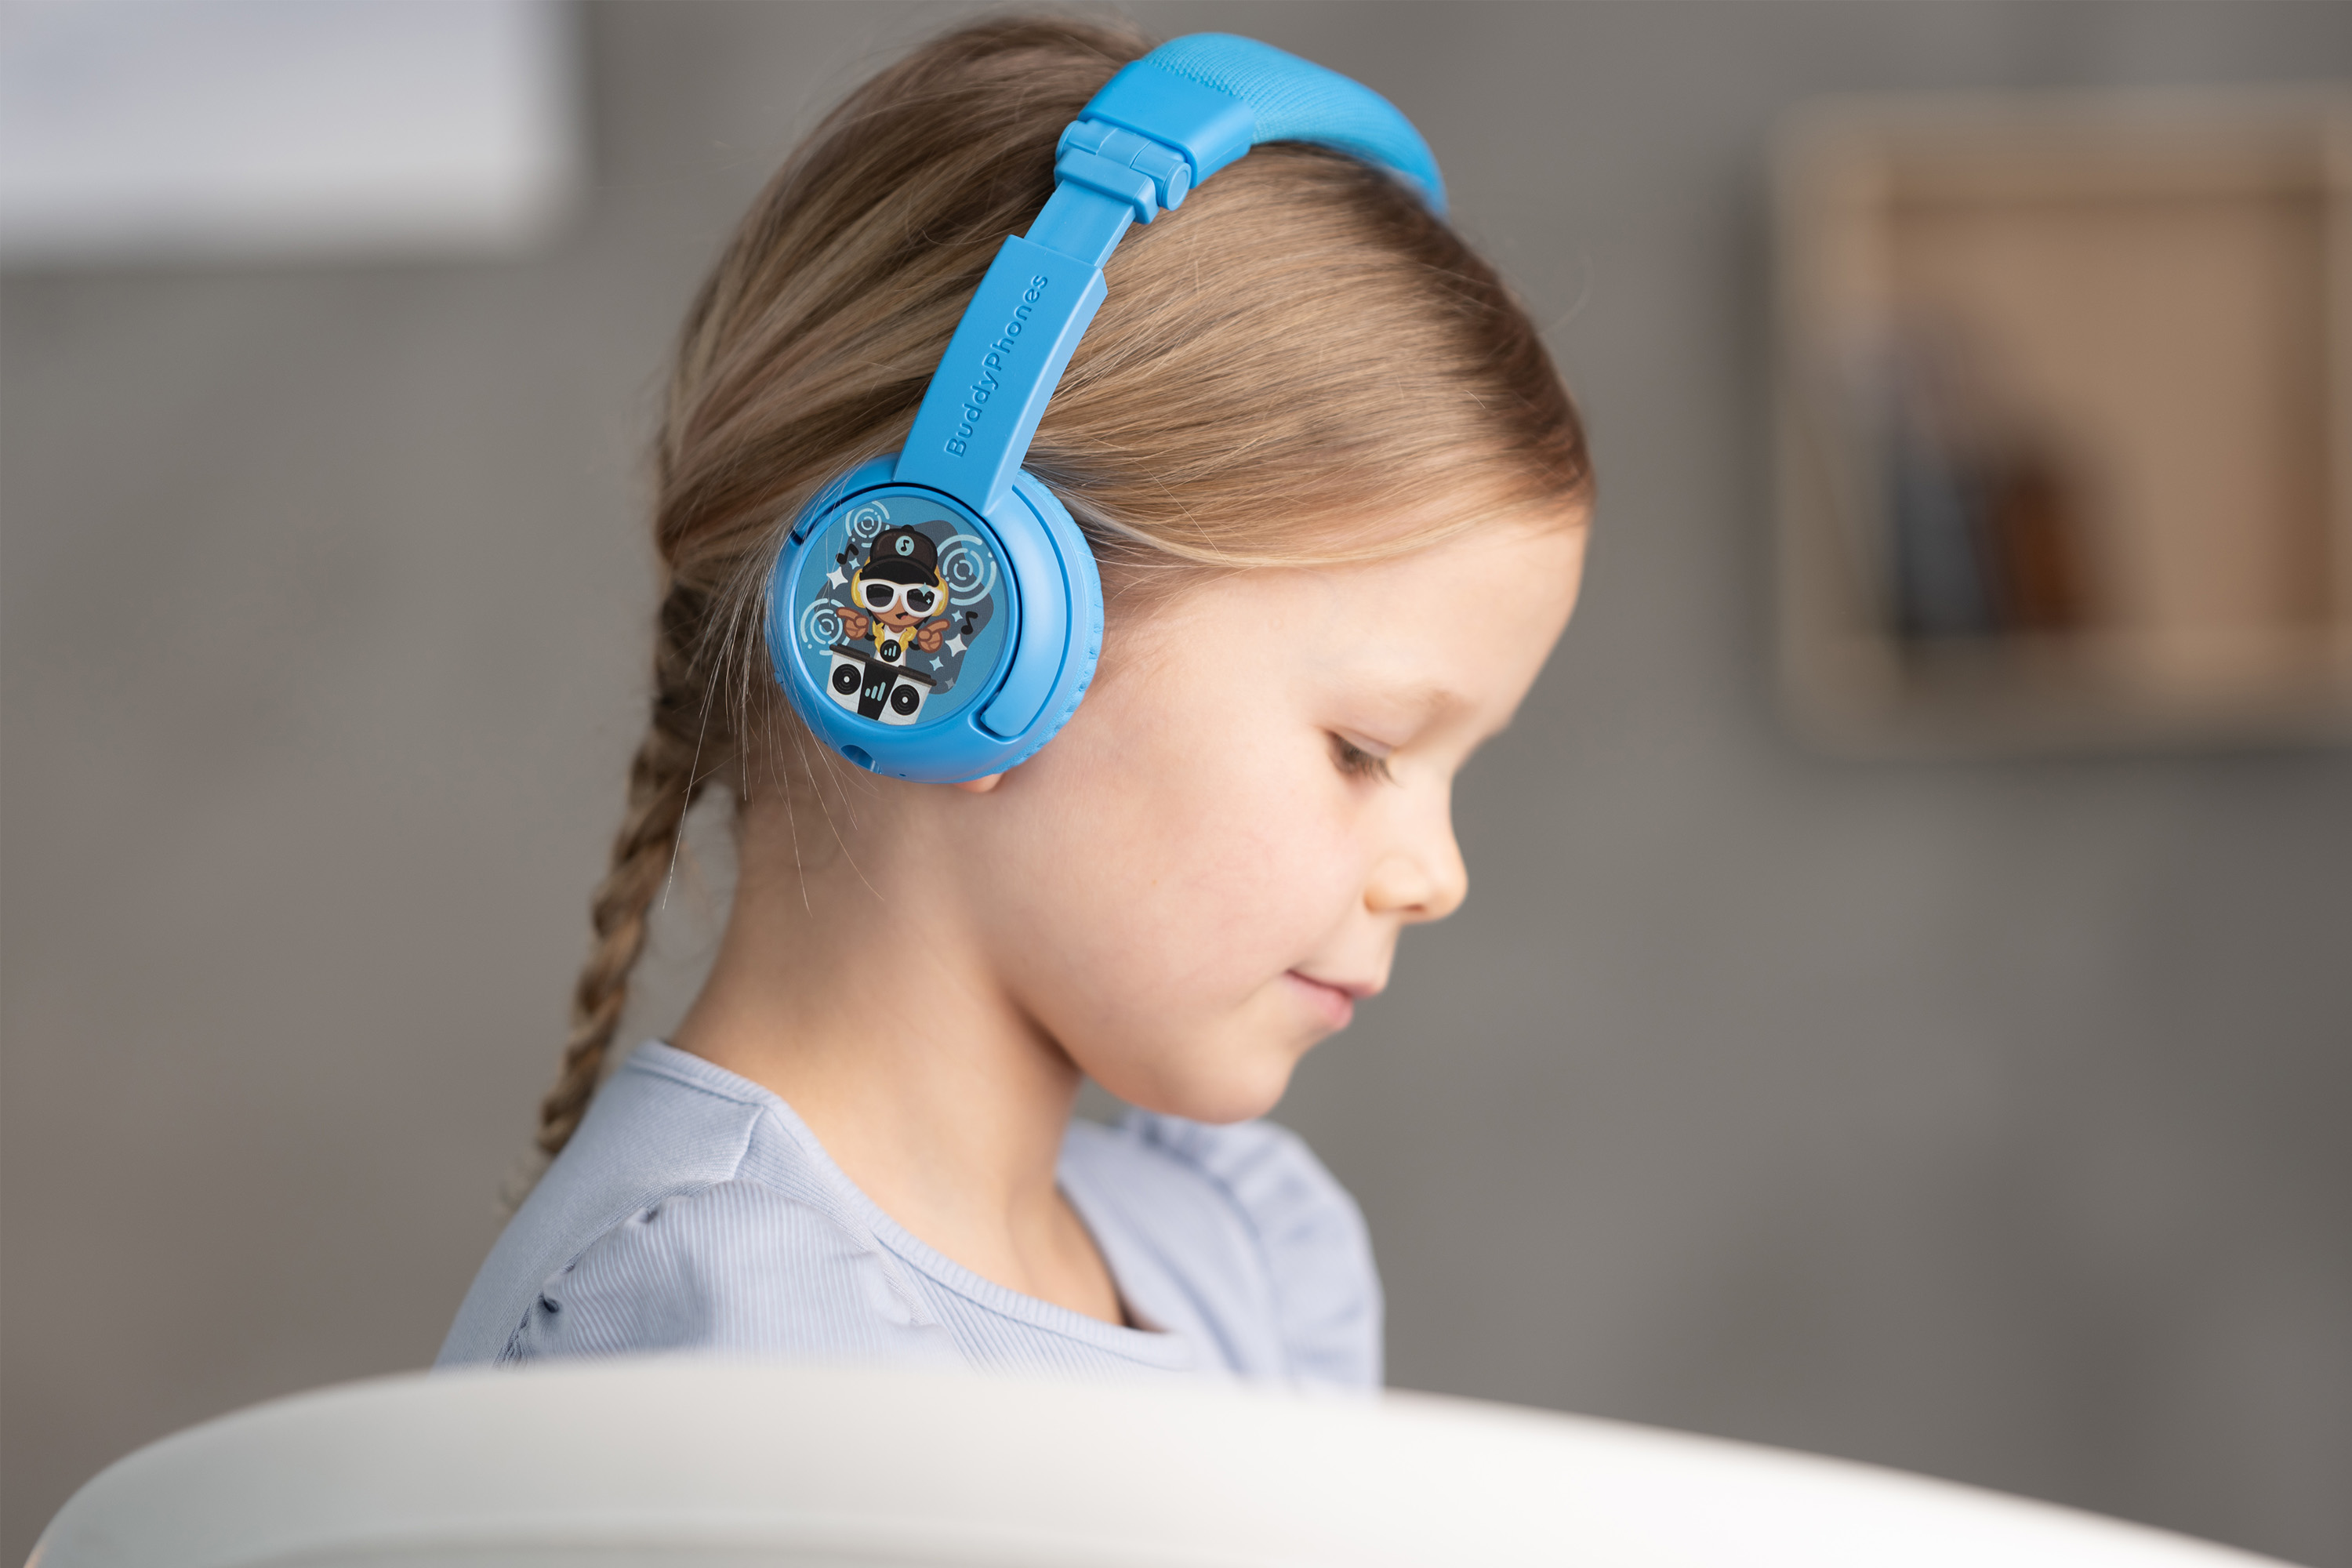 Play Plus, Bluetooth Kinder BUDDYPHONES Blau On-ear Kopfhörer